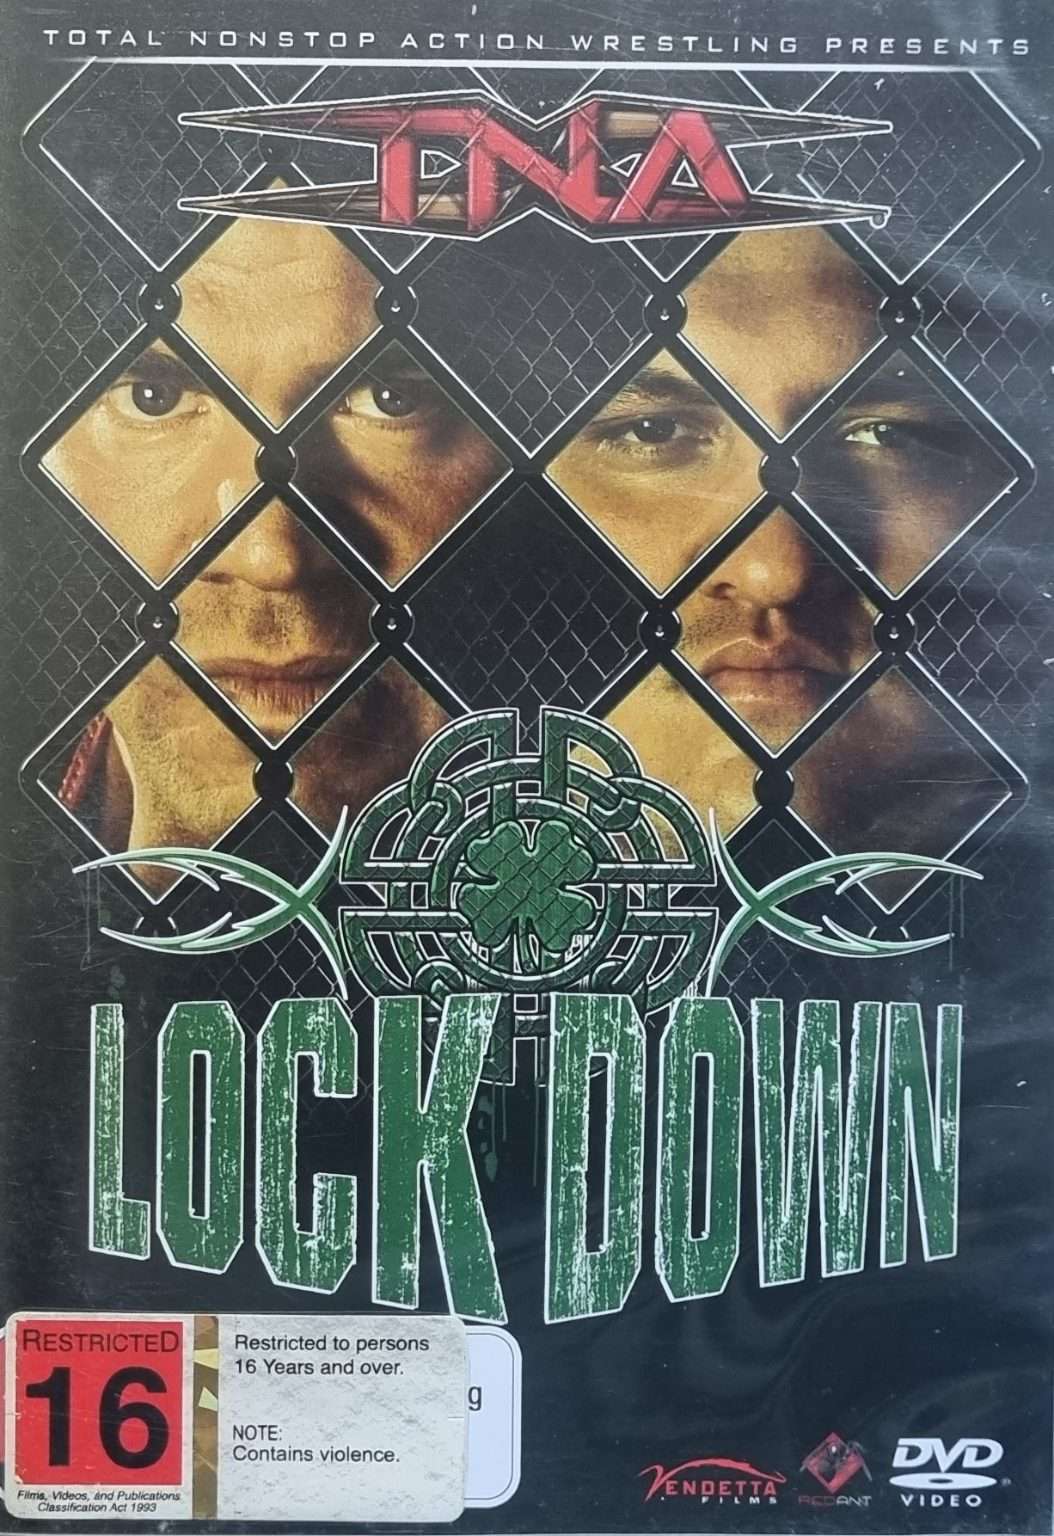 TNA Lock Down 2008